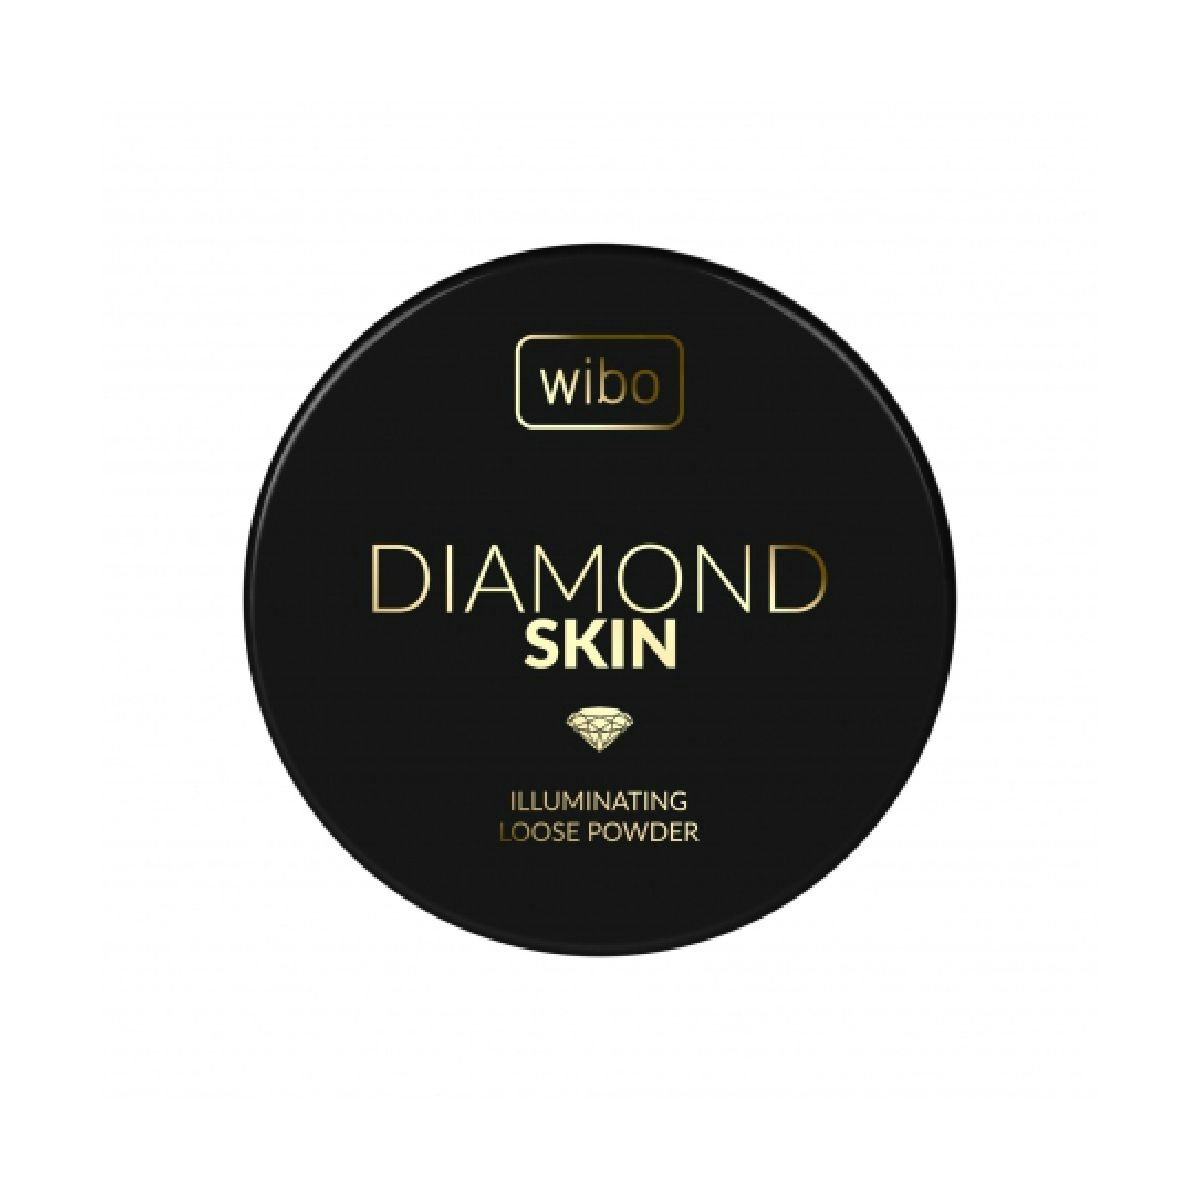 Polvos Sueltos Iluminadores Diamond Skin WIBO